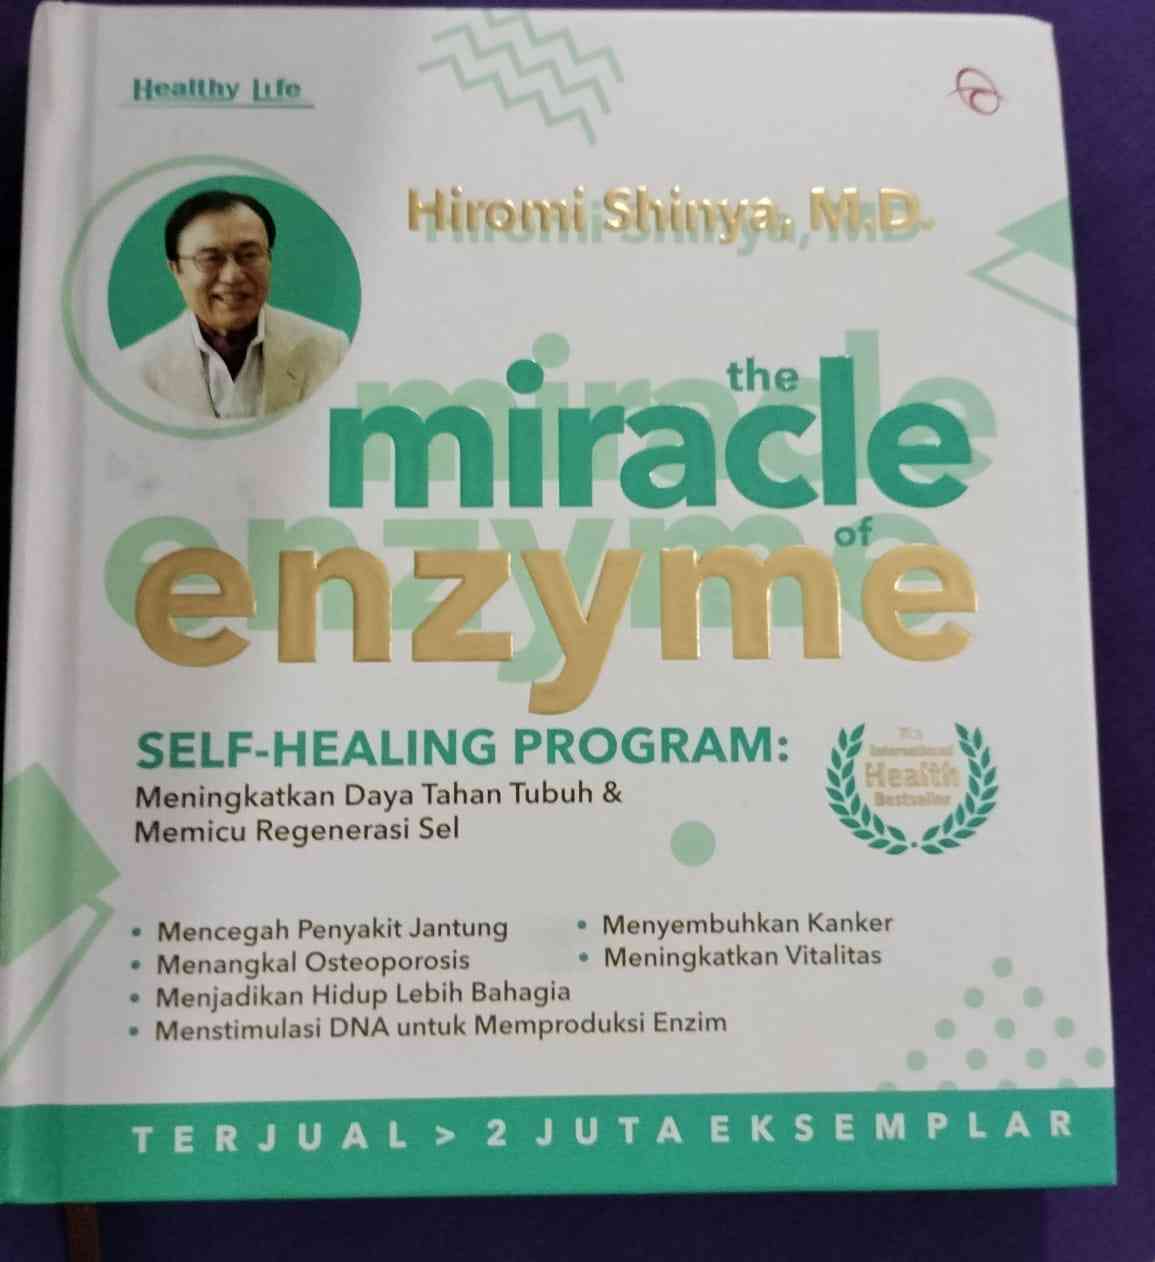 Menyingkap Rahasia Kerja Enzim Saat Puasa: Pembelajaran dari Buku "The Miracle of Enzyme" Karya Hiromi Shinya